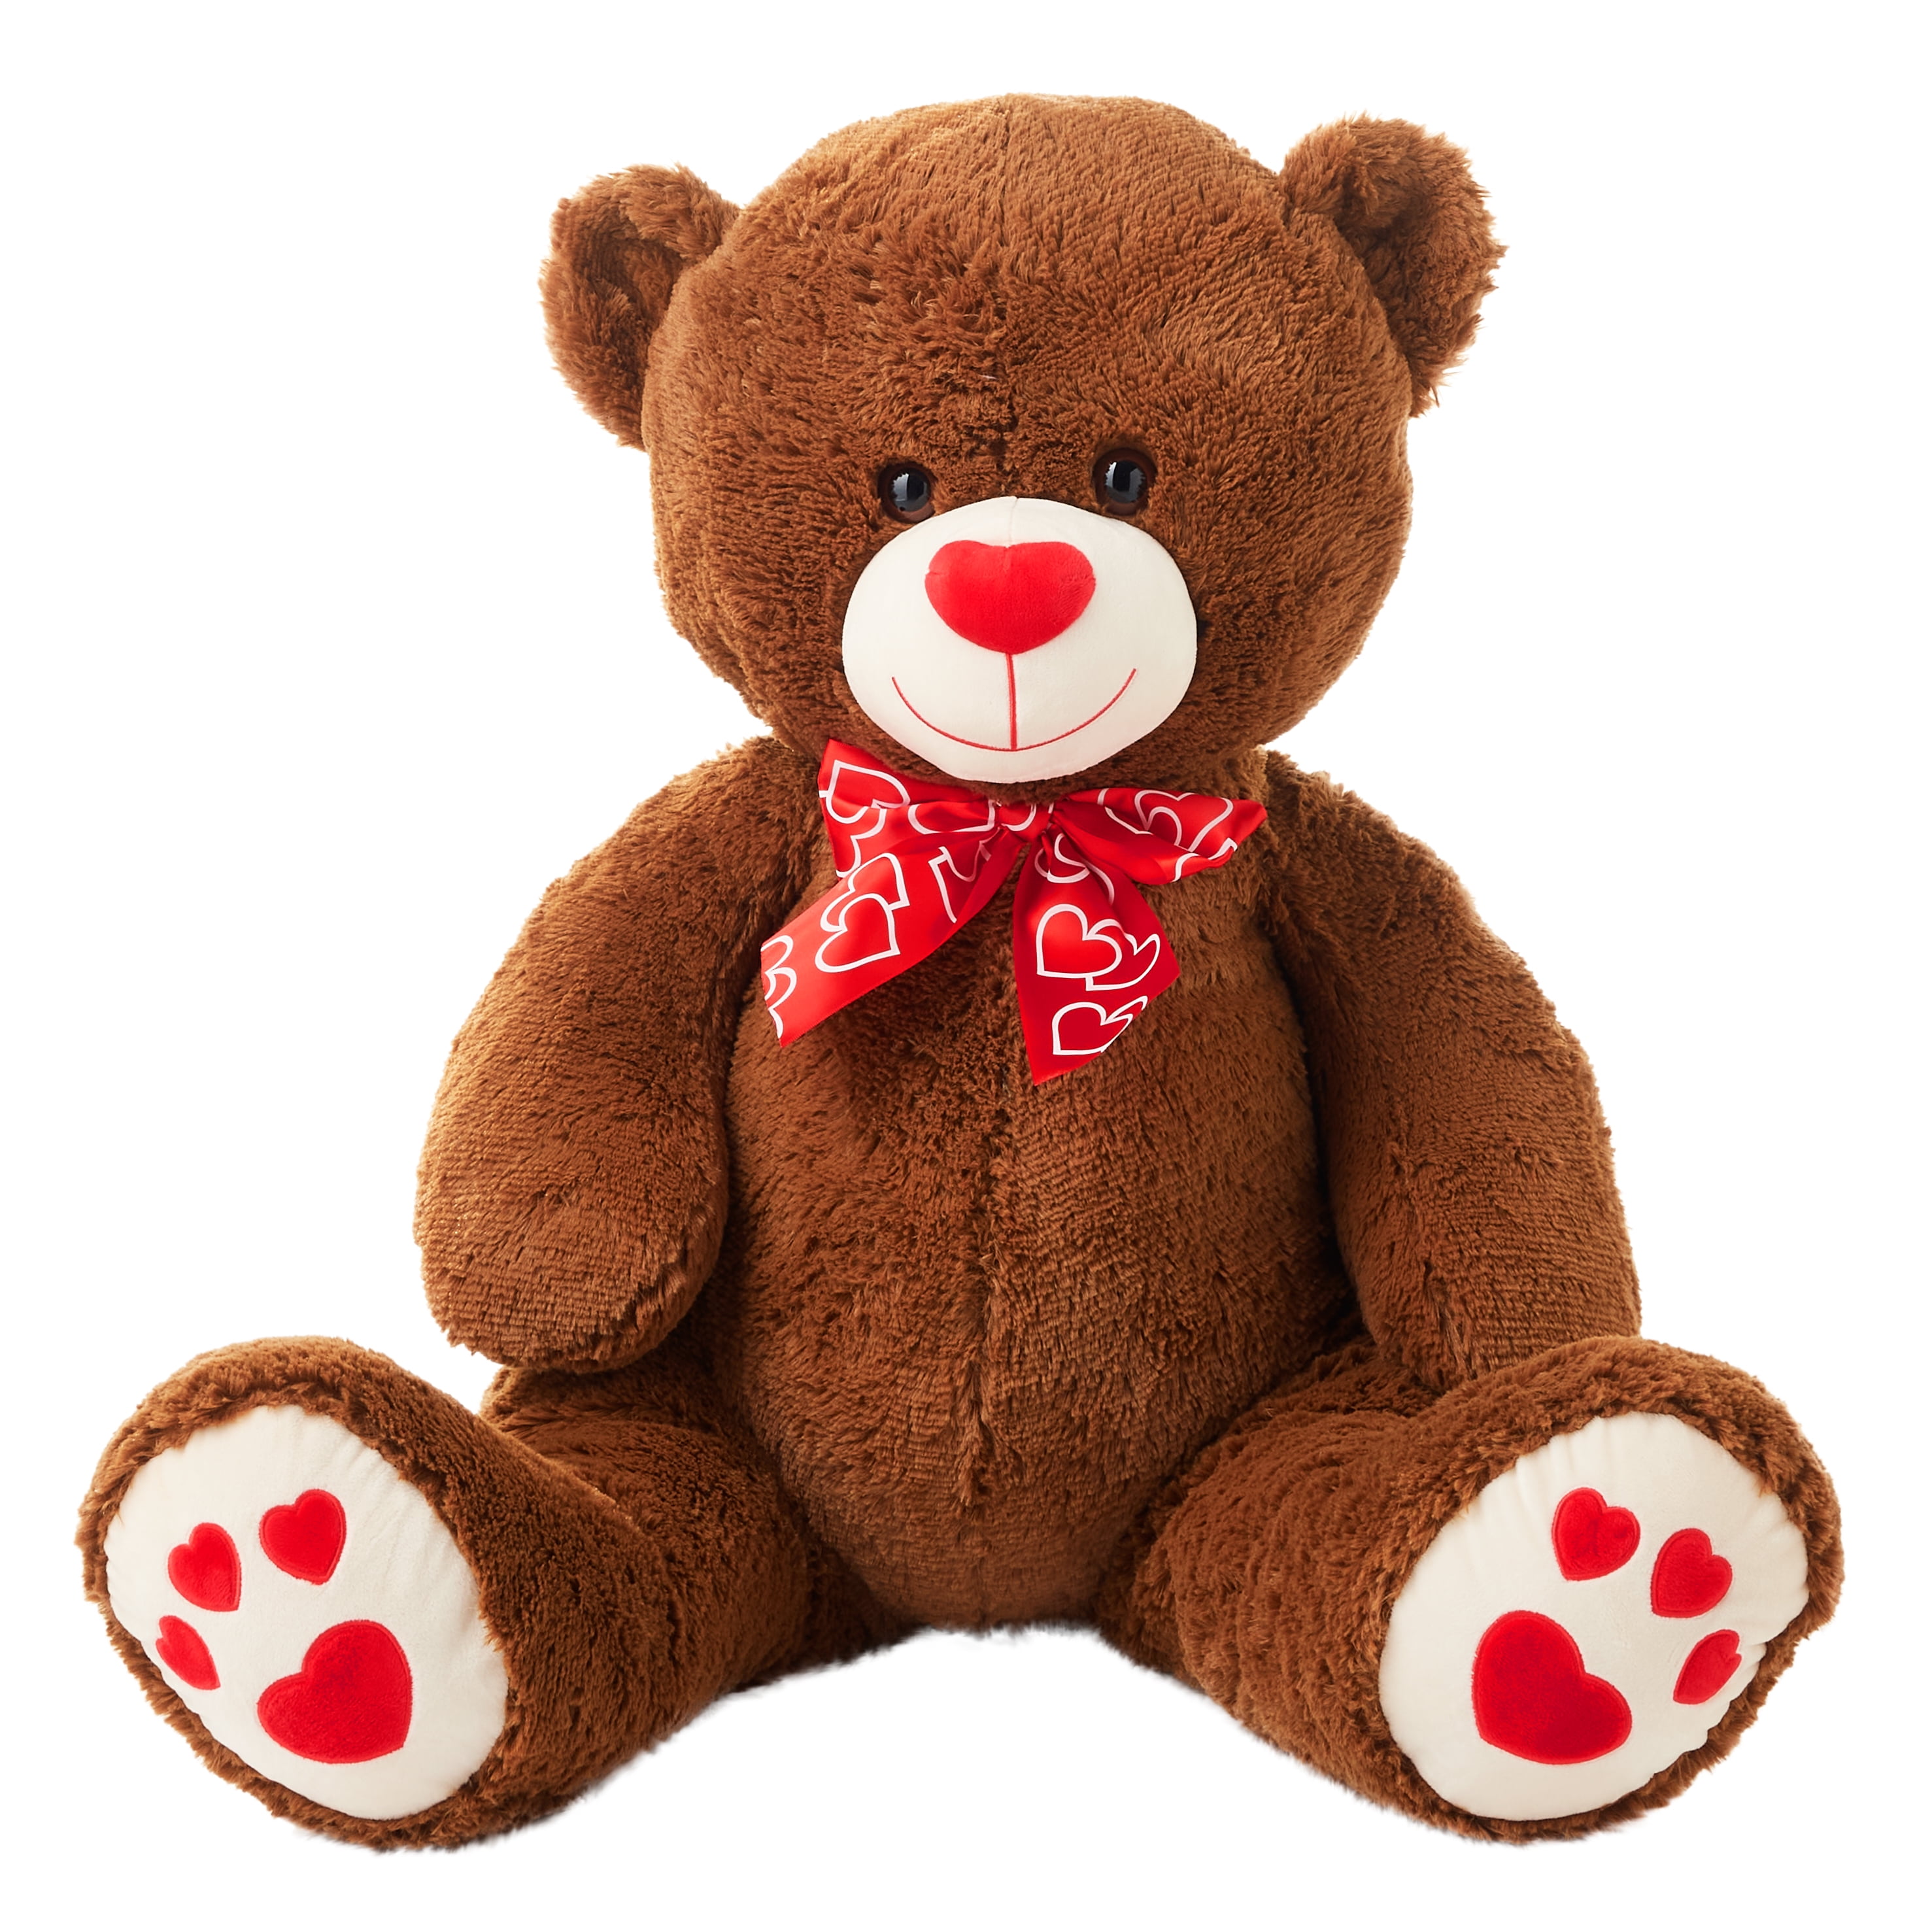 I LOVE HARD ROCK Teddy Bear Cute Cuddly NEW Music Gift Present Birthday 